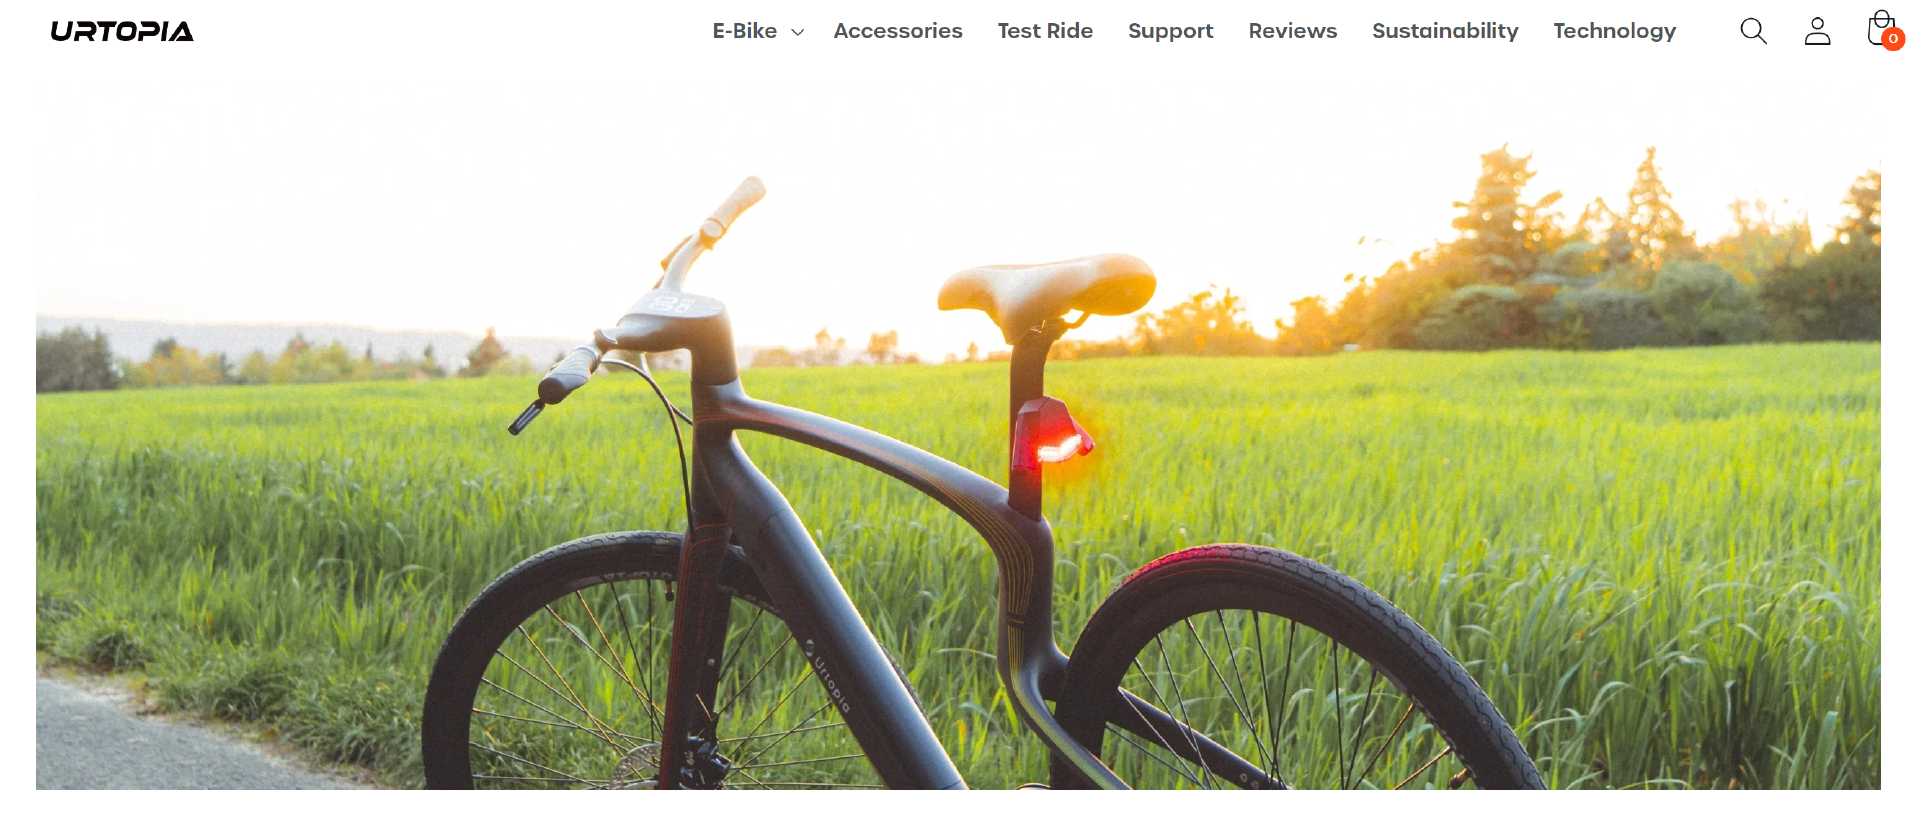 E-Bike品牌「URTOPIA」完成超千万美元A轮融资